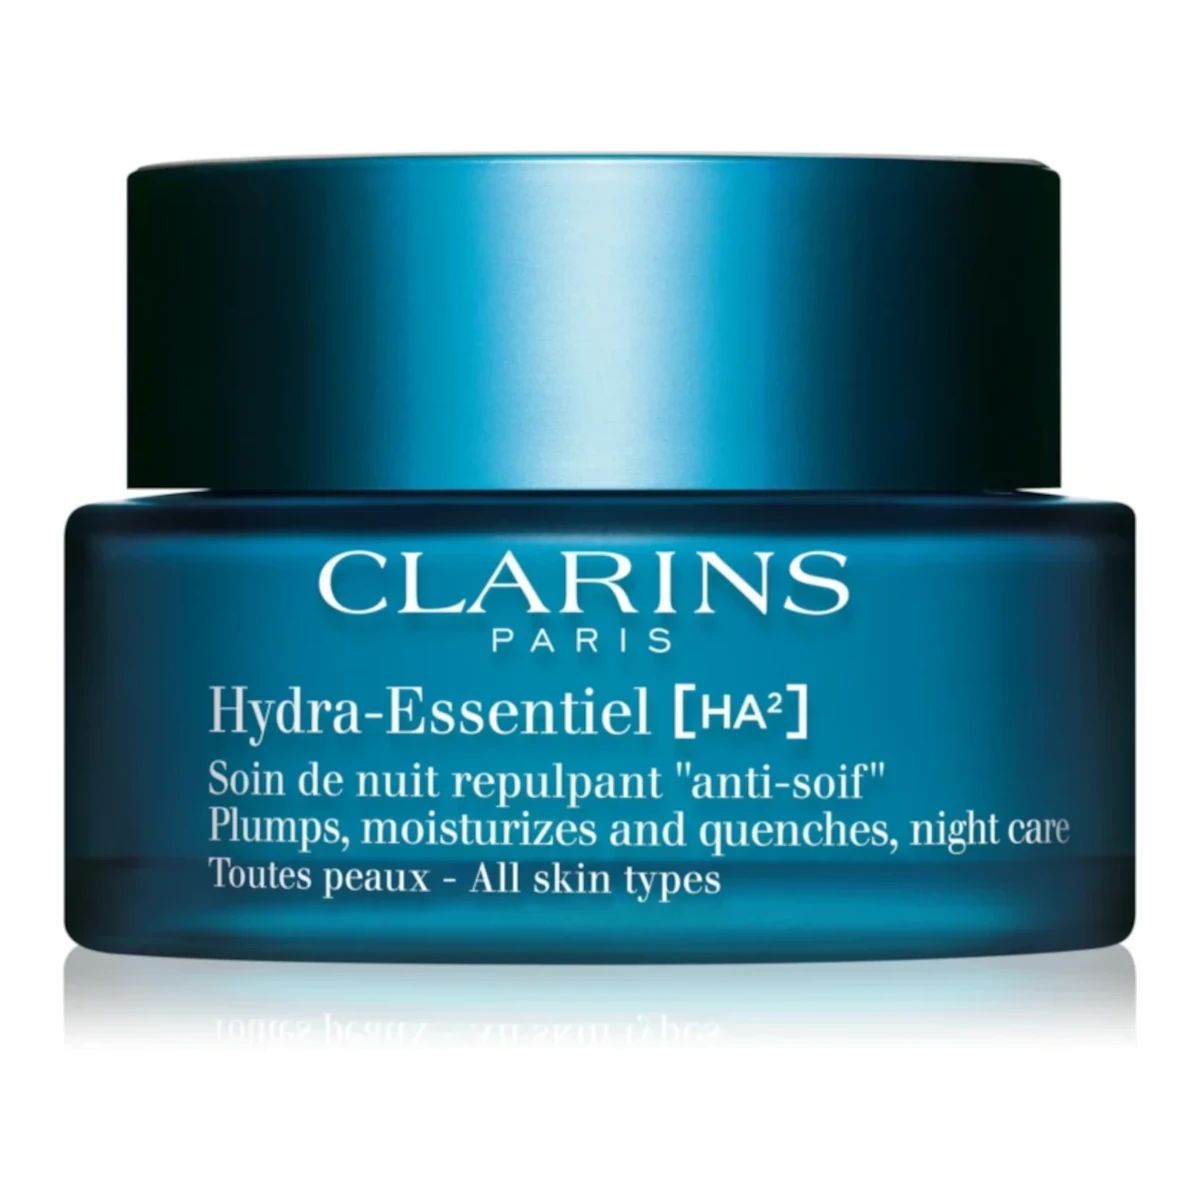 Clarins Hydra-Essentiel [HA²] Night Cream 50ml nawilżający krem na noc z kwasem hialuronowym